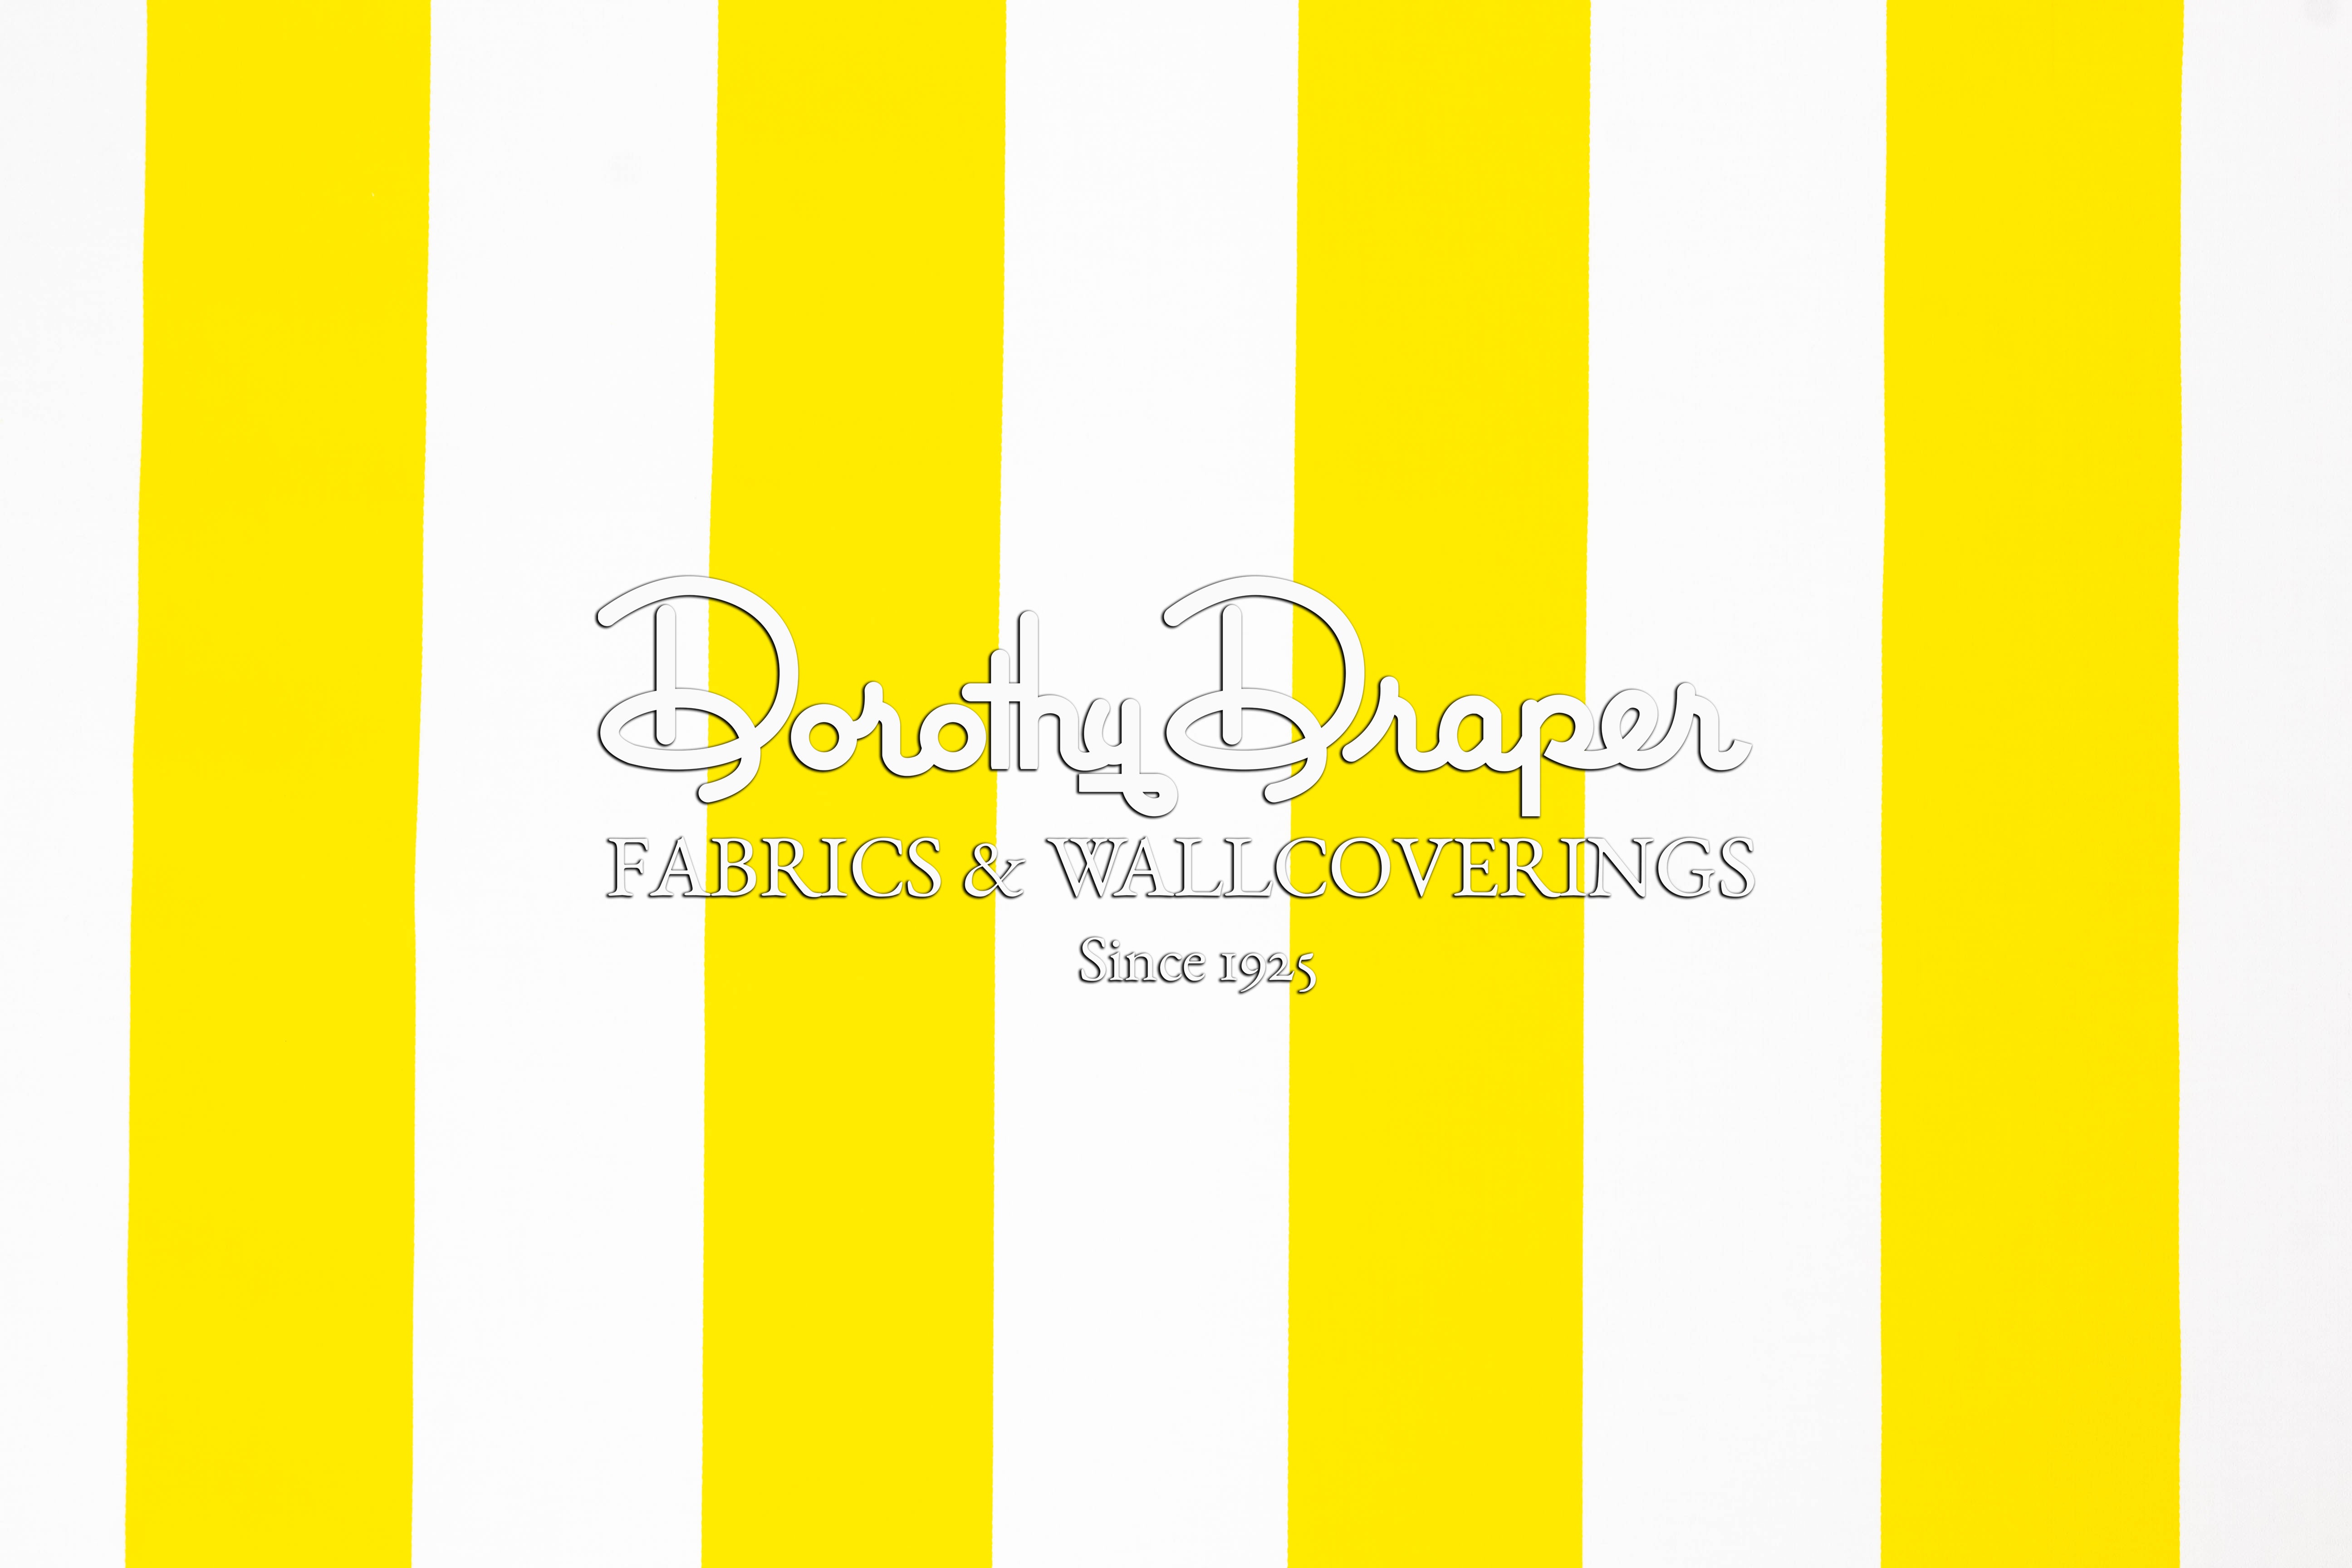 Draper Stripe Bright Yellow Fabric